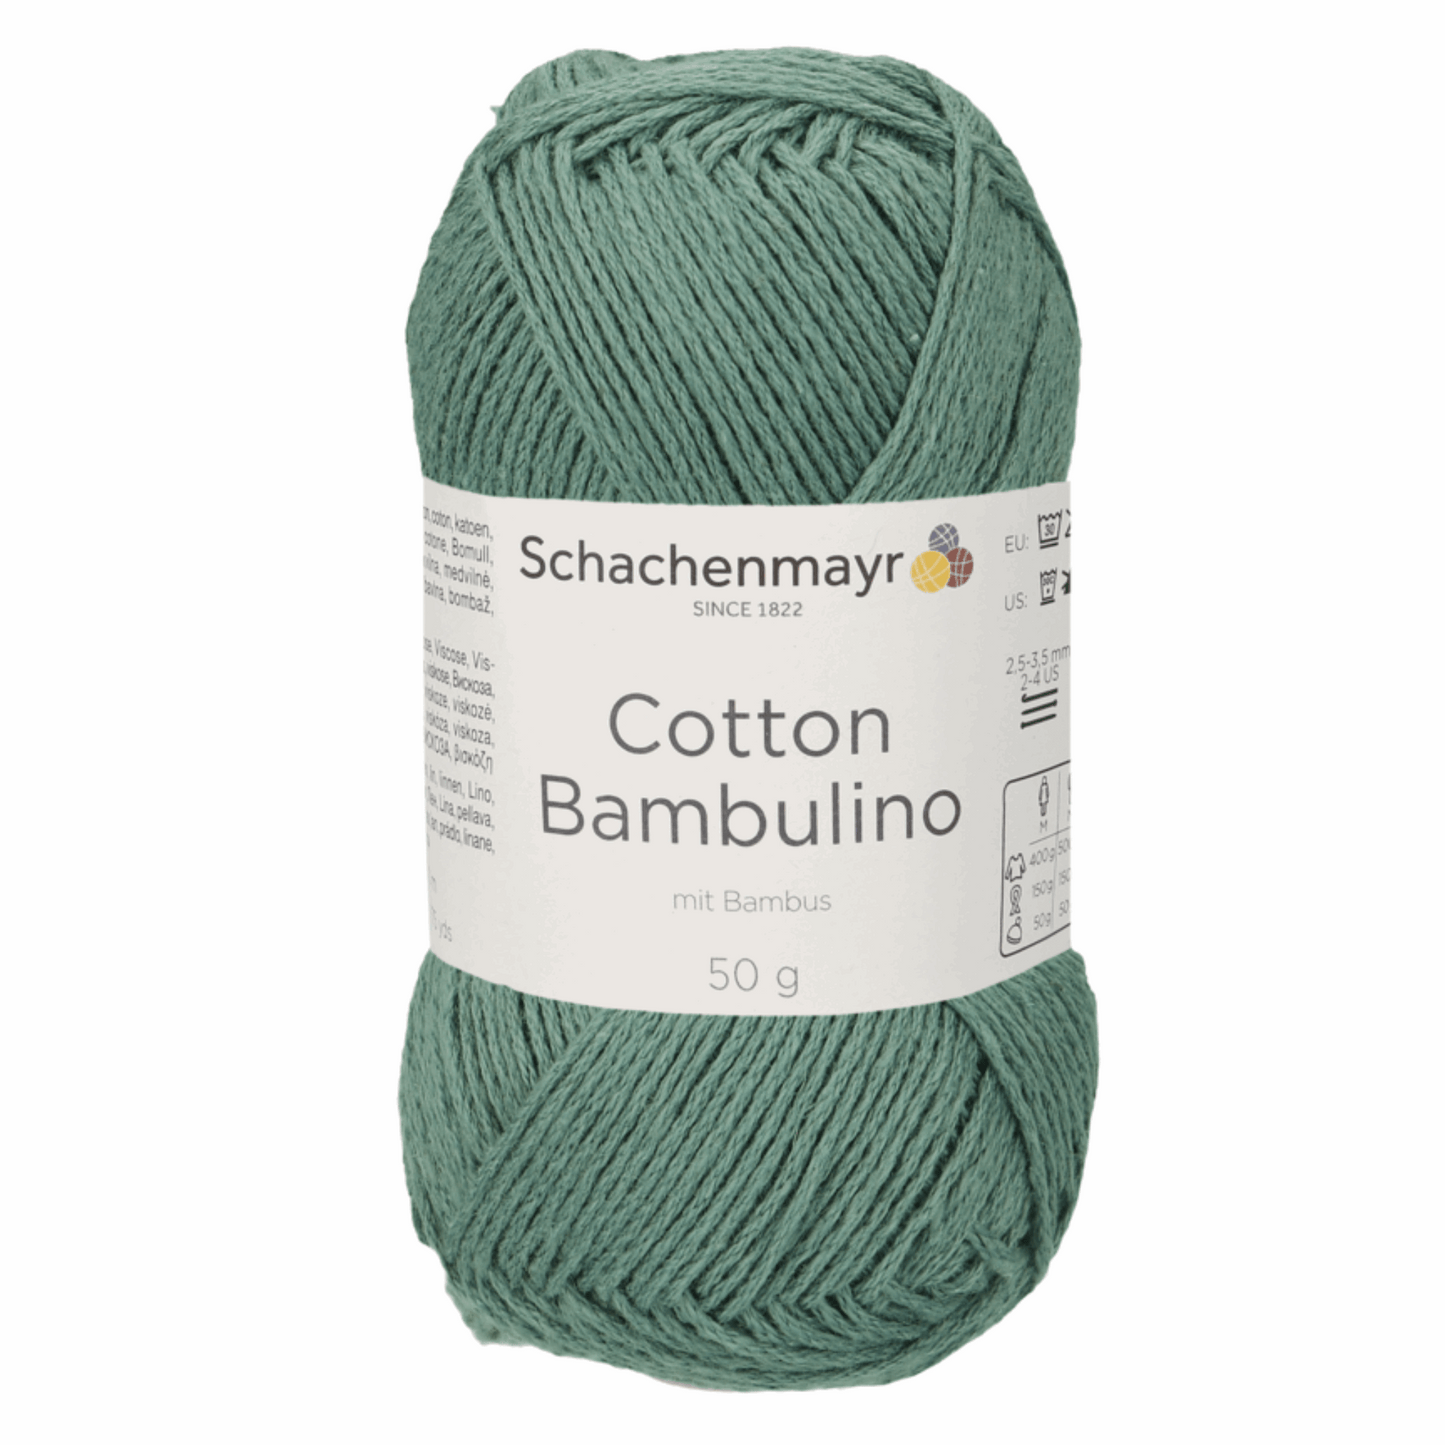 Schachenmayr Cotton Bambulino 50g, 90403, Farbe Salbei 71